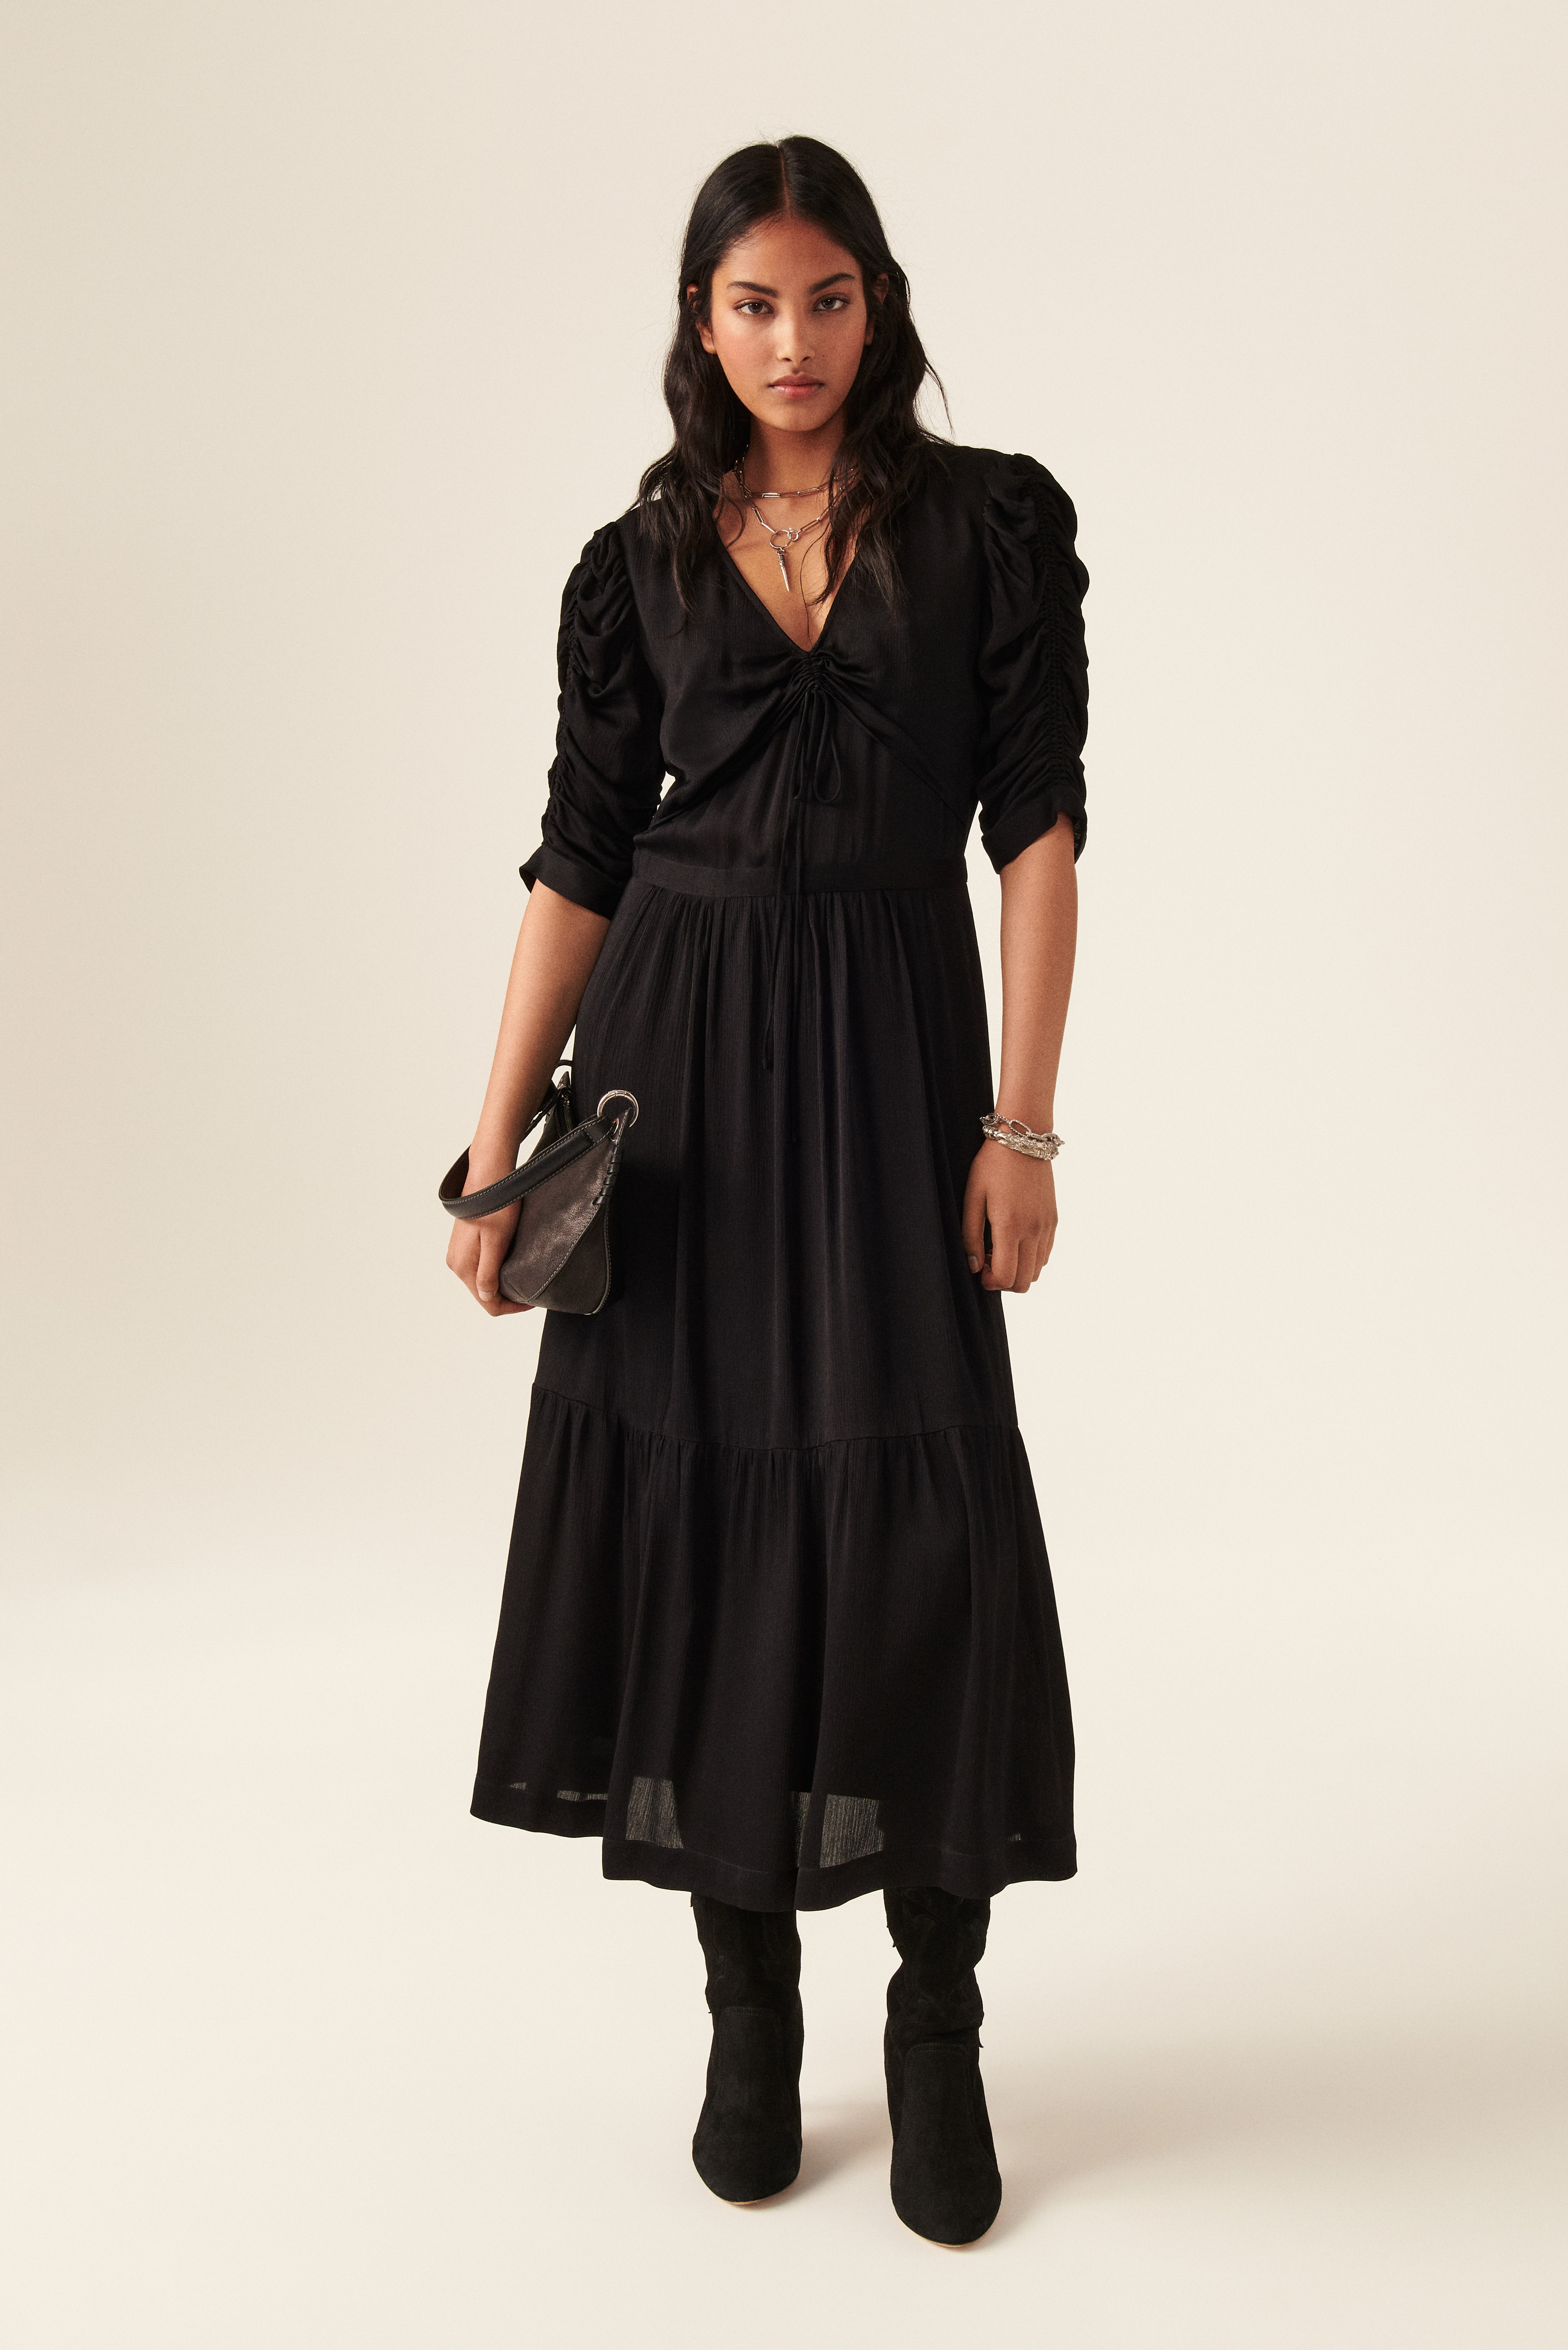 dress for woman - Black  Ba&Sh dress KEZIA online at